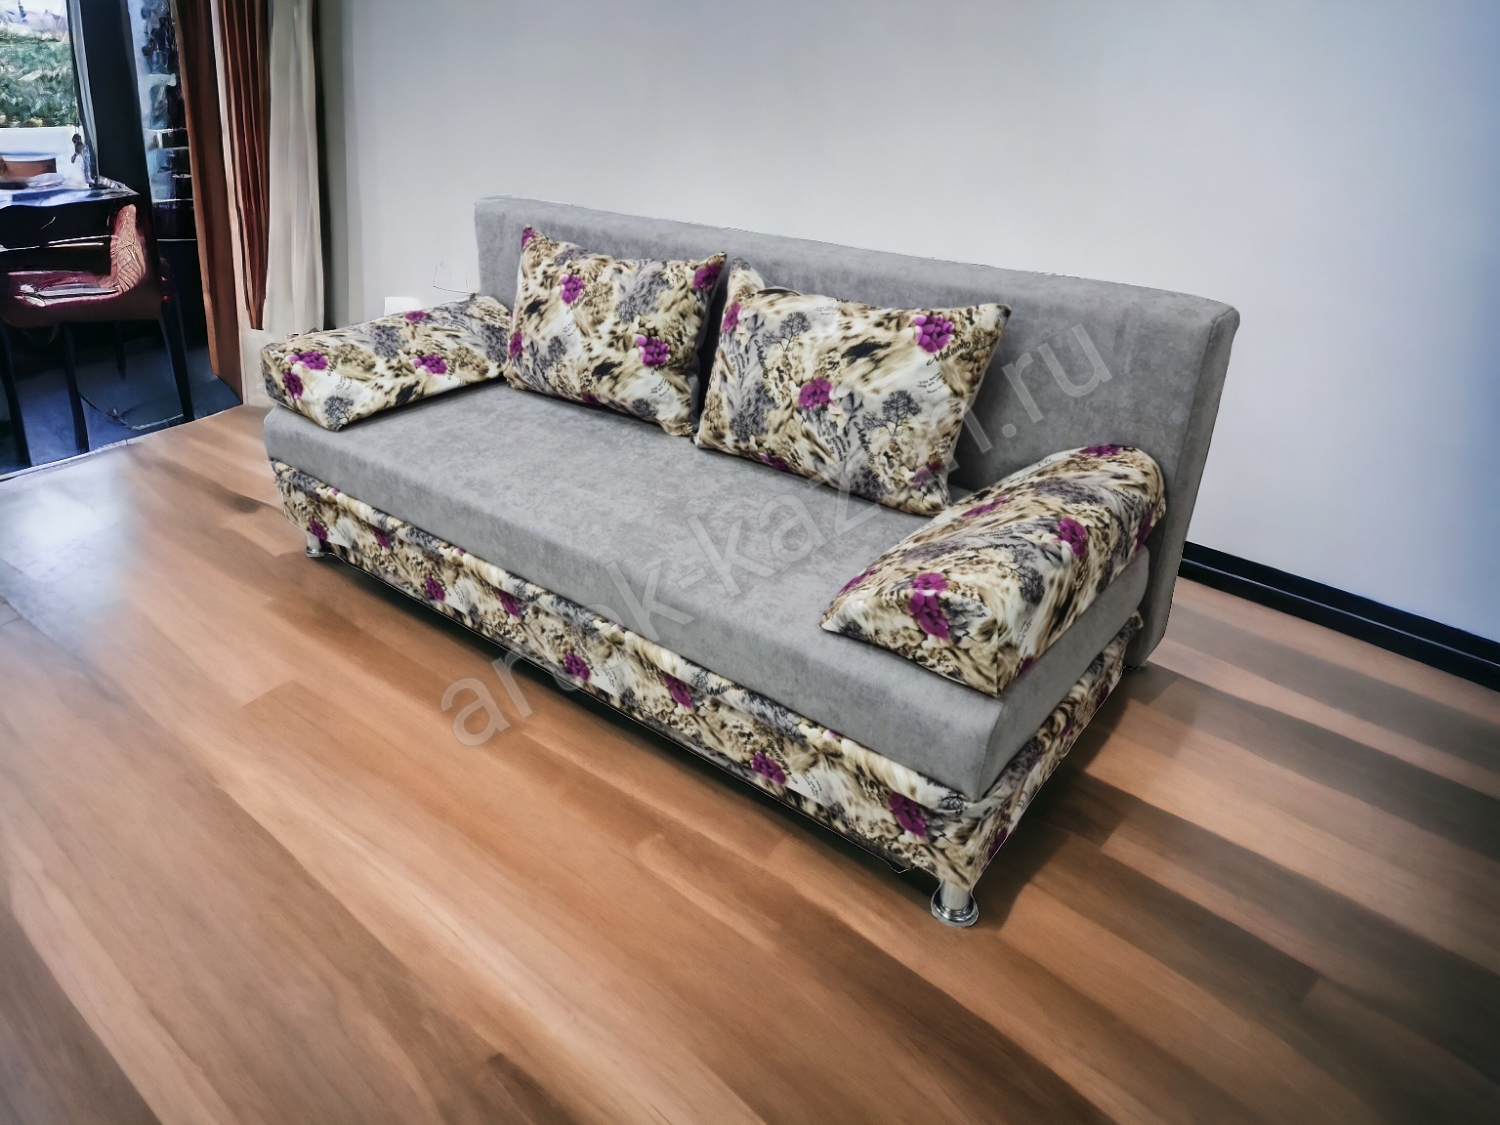 Фото 8. Купить недорогой диван по низкой цене от производителя можно у нас.